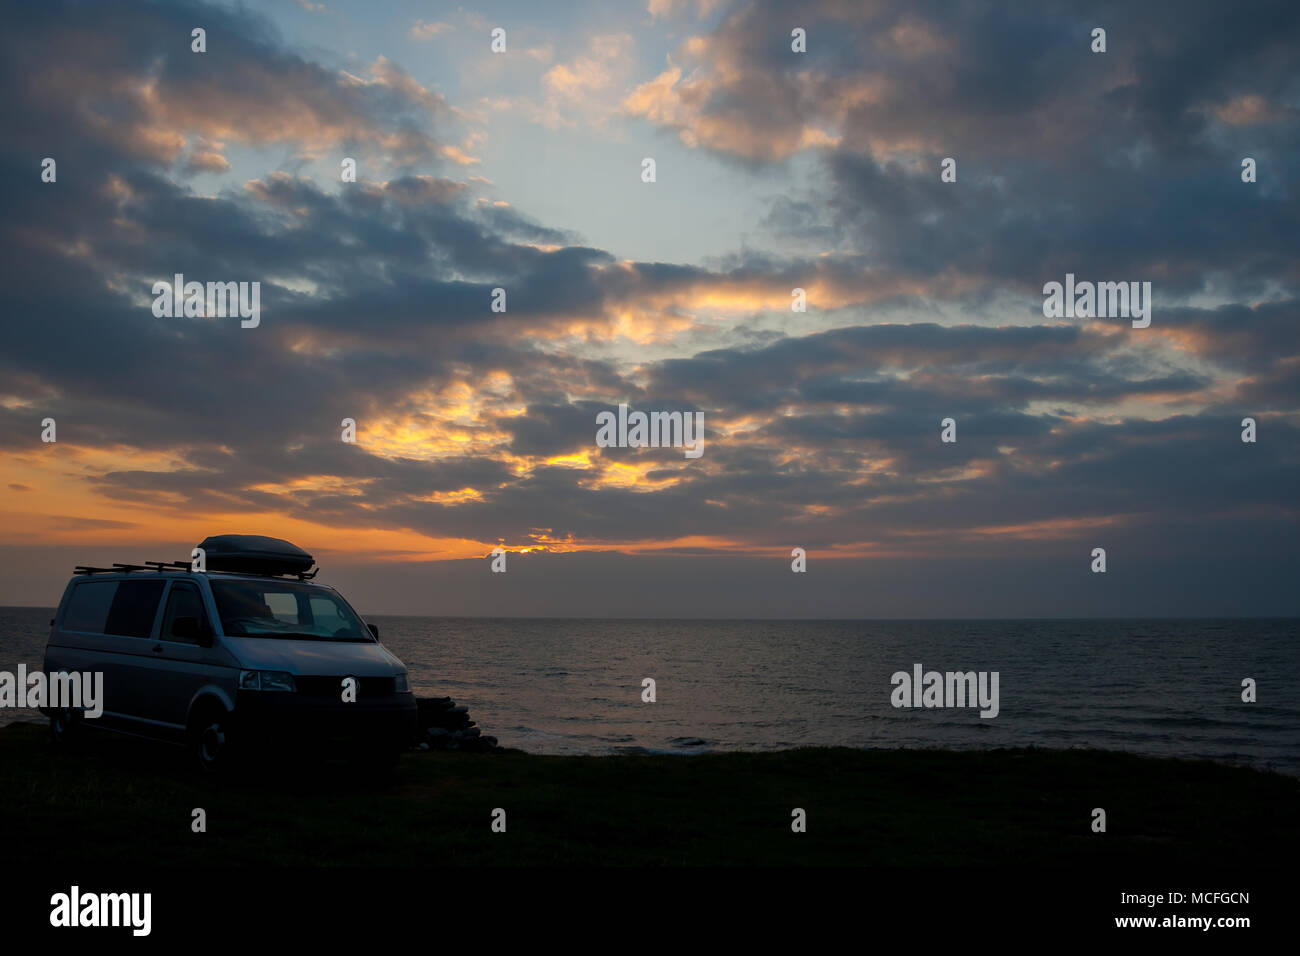 Vue pittoresque du campervan VW transporter argenté garé sur le côté de la falaise surplombant la mer calme au coucher du soleil. Scène spectaculaire du ciel. Staycation Royaume-Uni. Banque D'Images